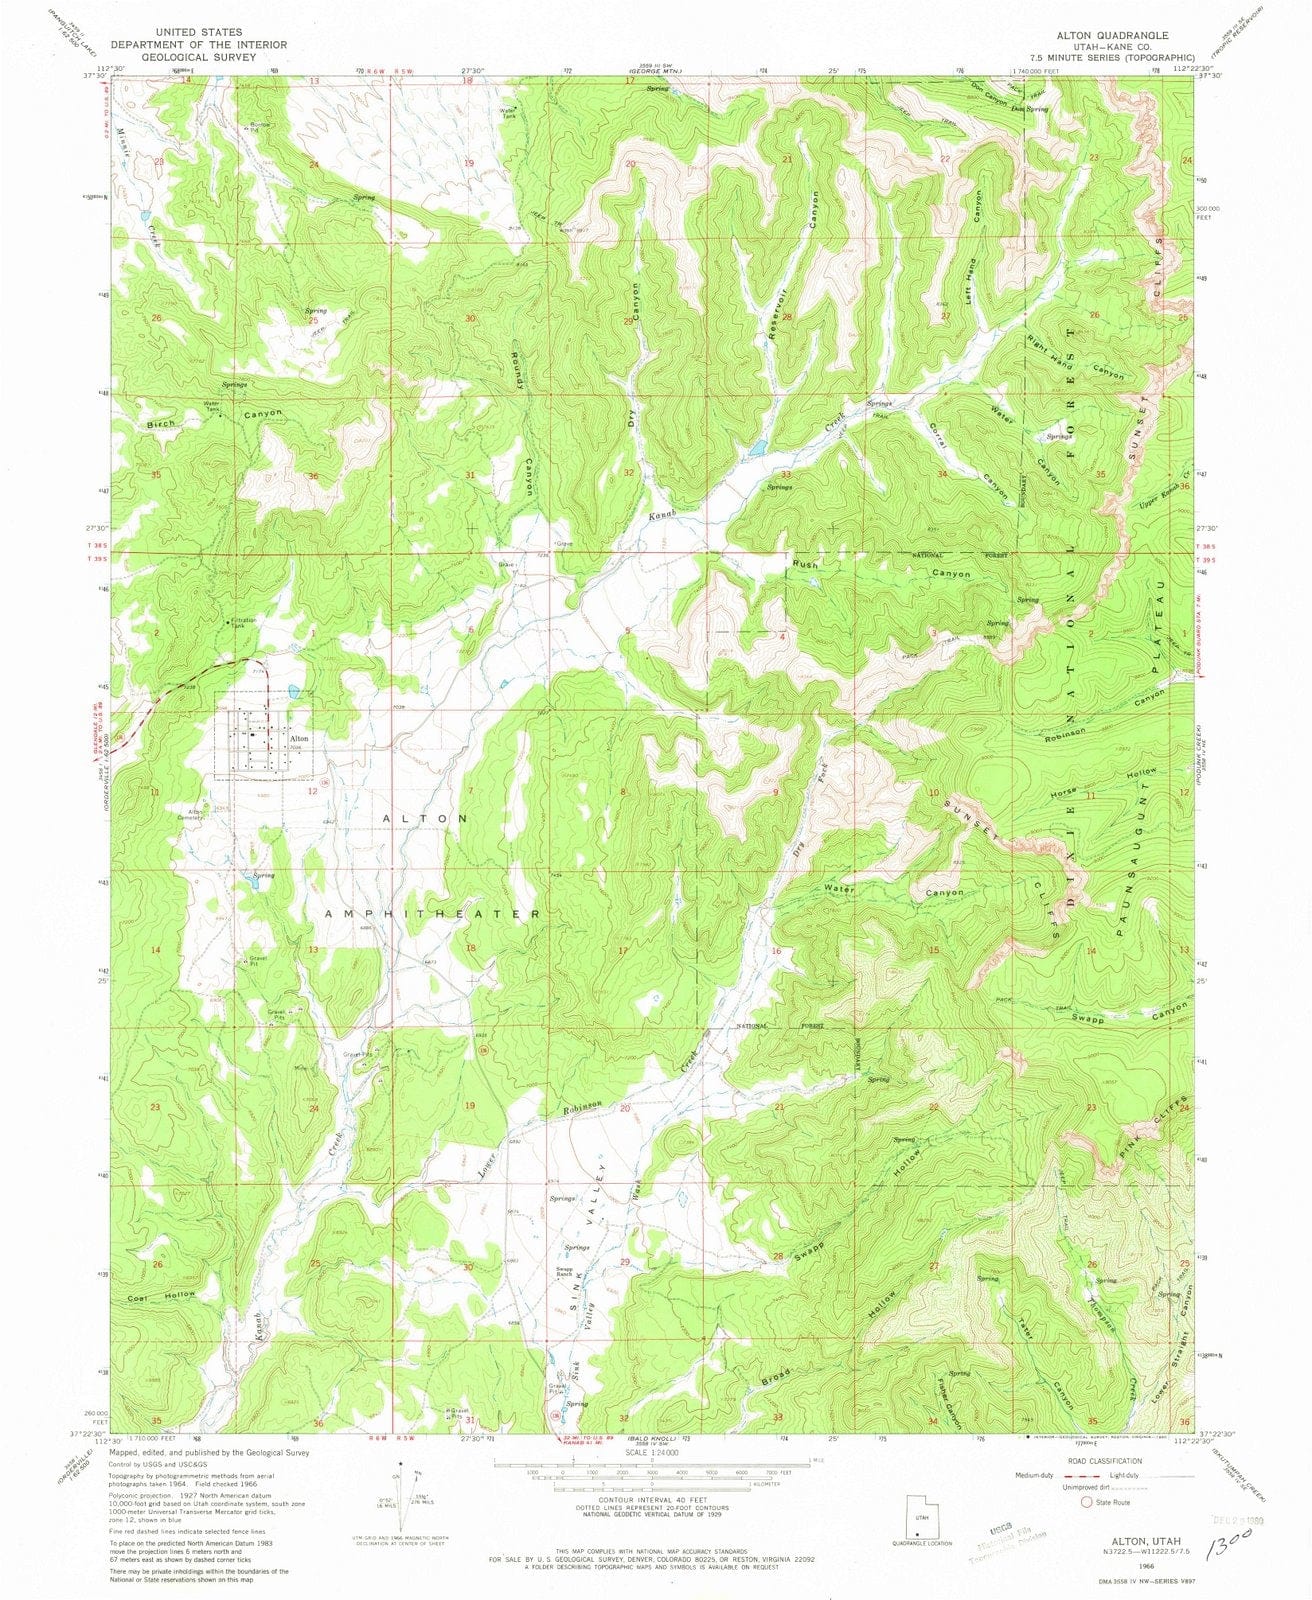 1966 Alton, UT - Utah - USGS Topographic Map